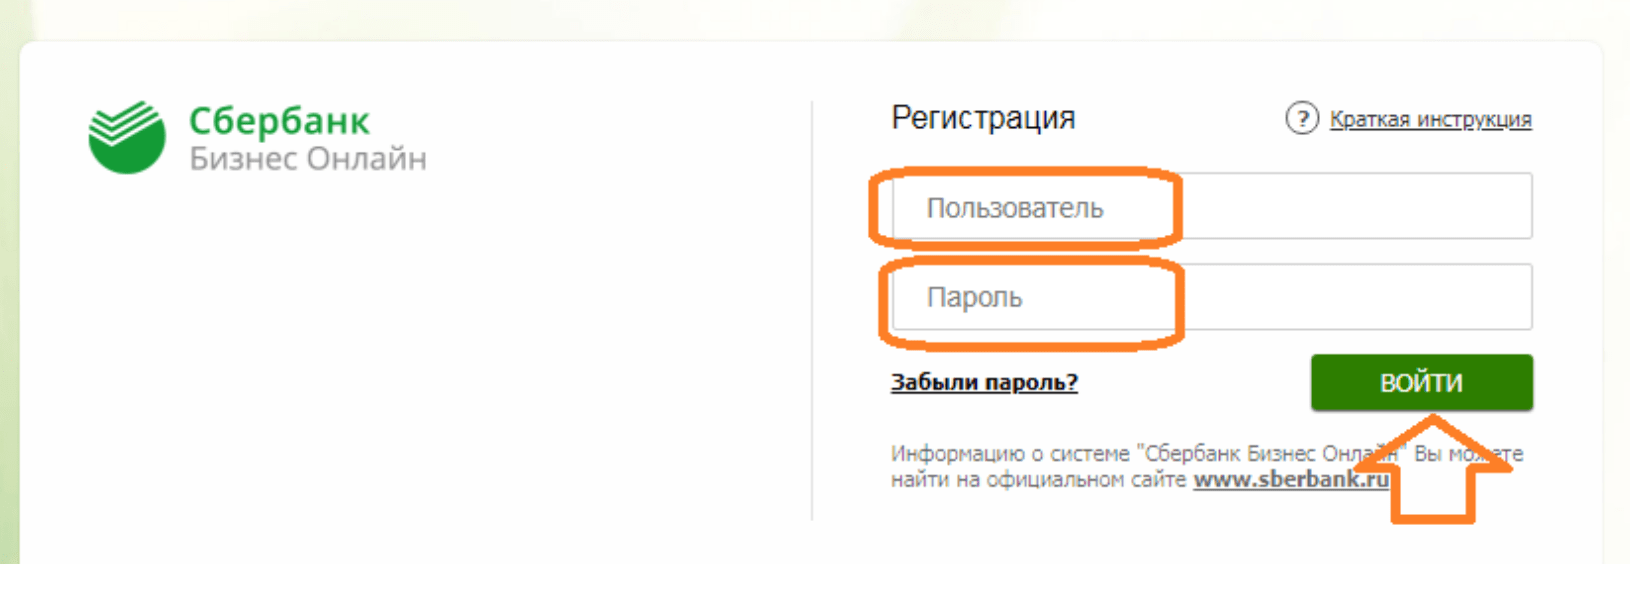 Сбербанк бизнес 9443 ru онлайн франшиза на зоомагазин в москве